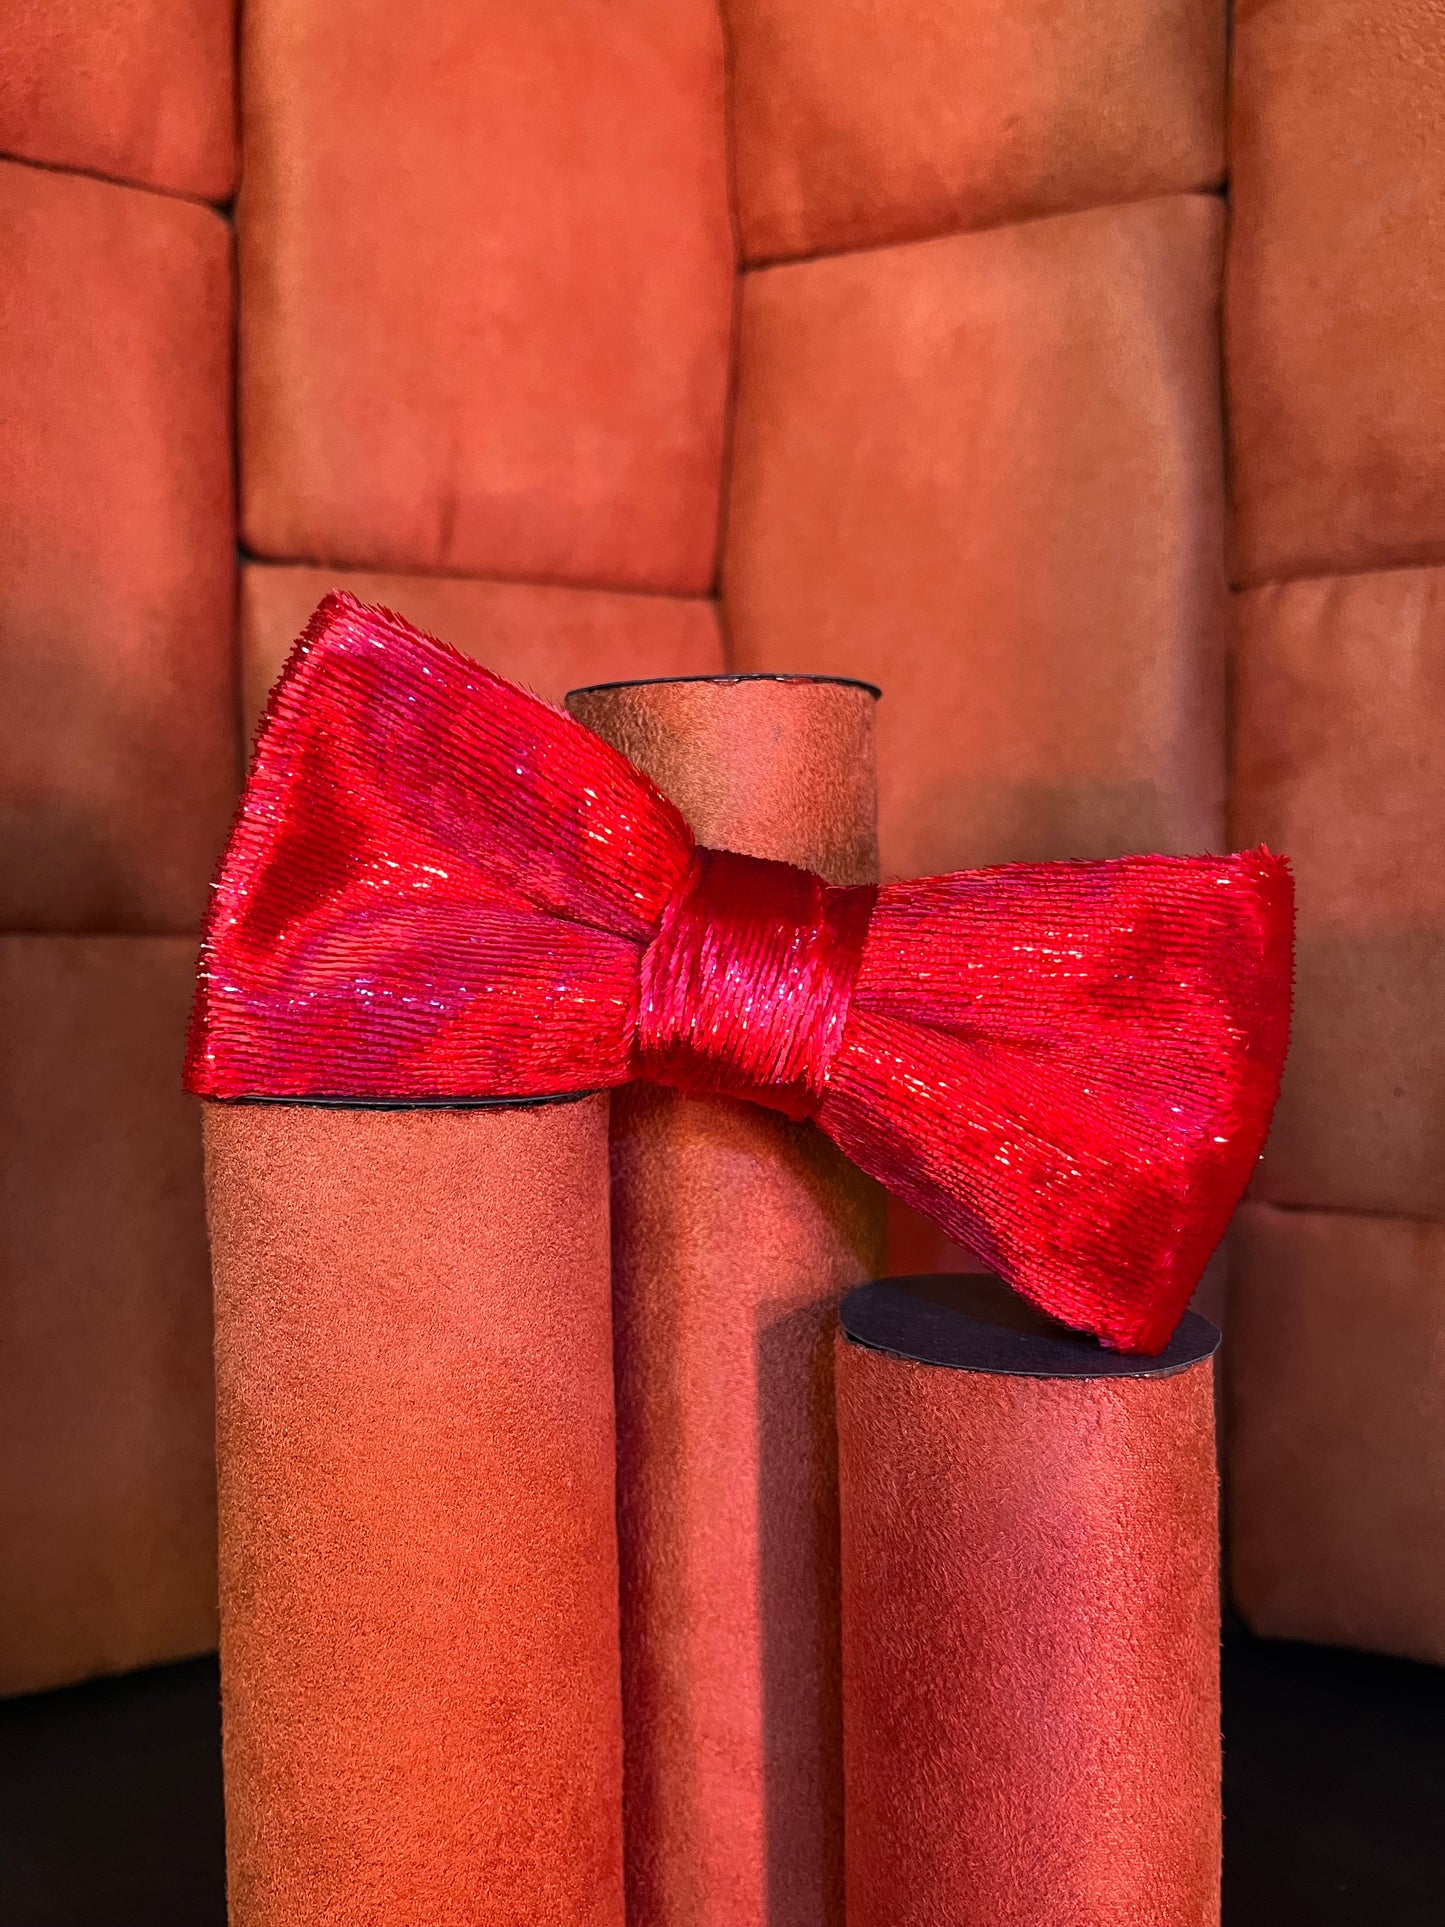 Crimson Velvet Bow Tie